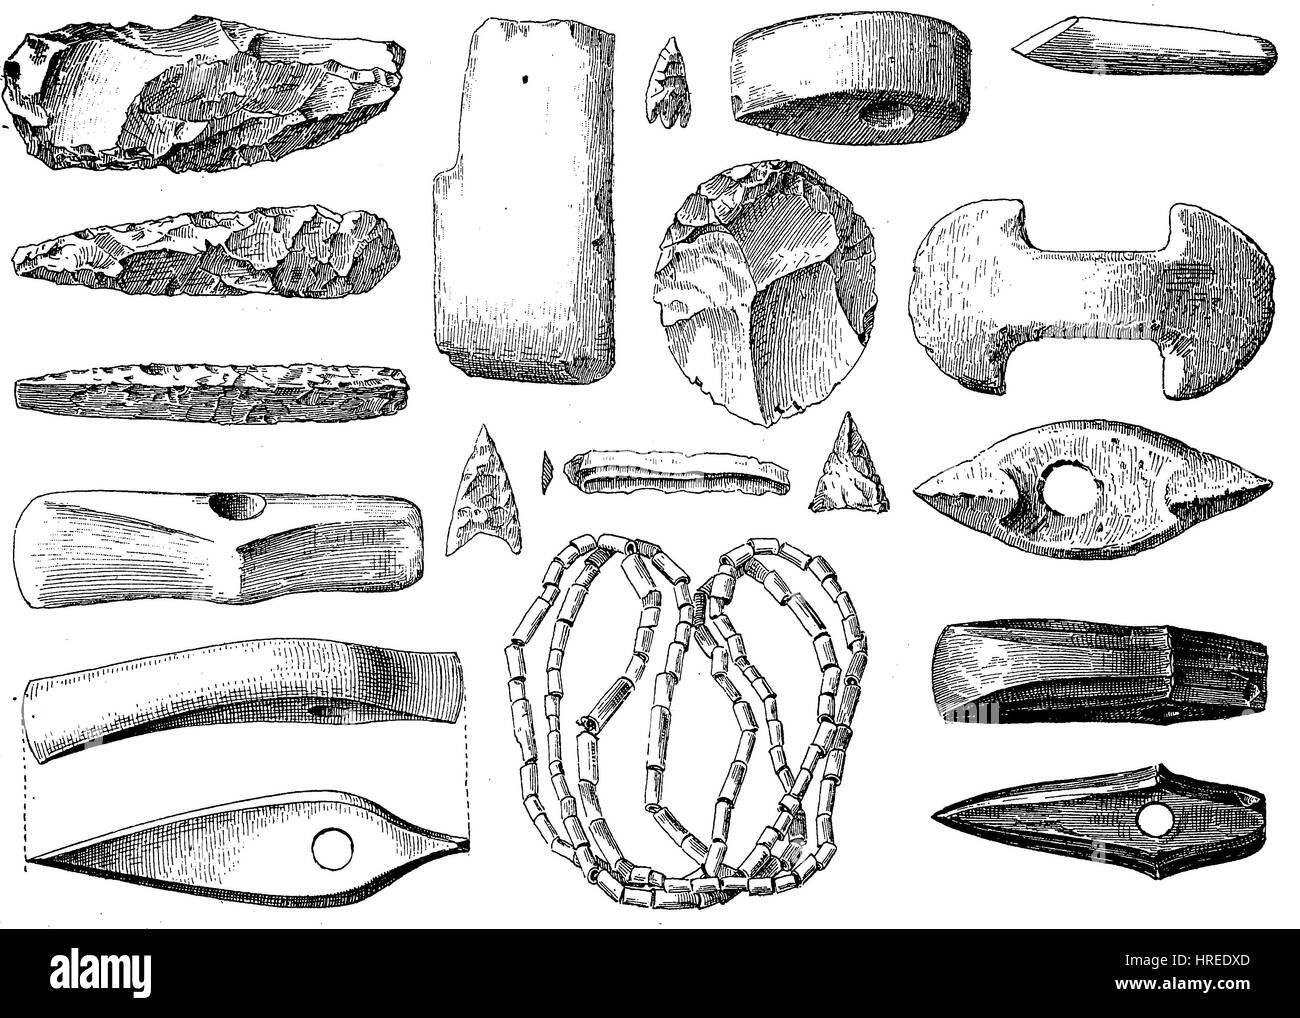 Armas, joyas y utensilios de la Edad de Piedra, Alemania, reproducción de una xilografía del siglo xix, 1885 Foto de stock